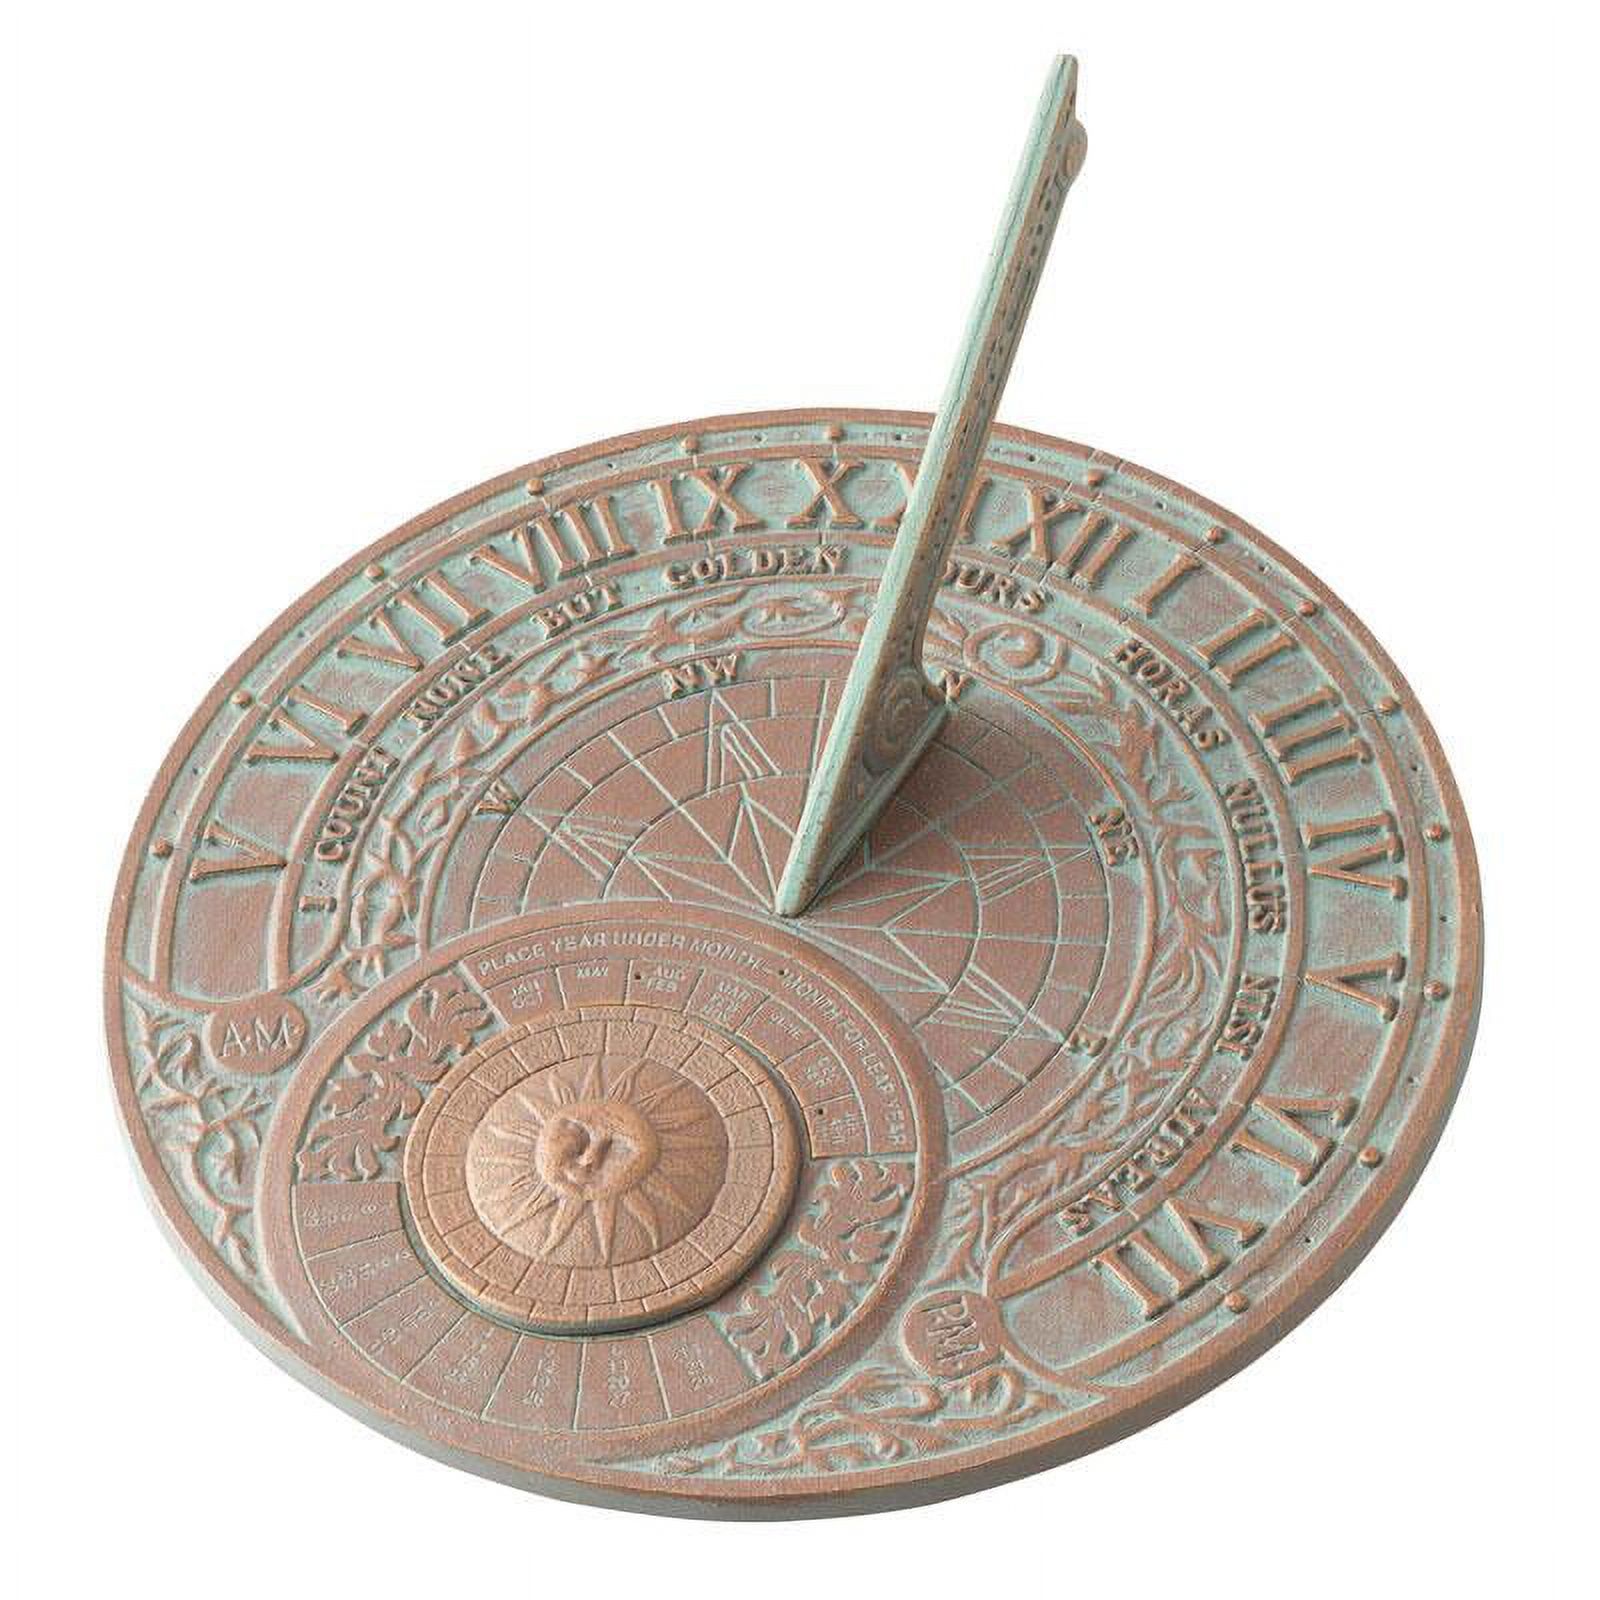 Whitehall 00166 Perpetual Calendar Sundial - Copper Verdigris - image 1 of 2